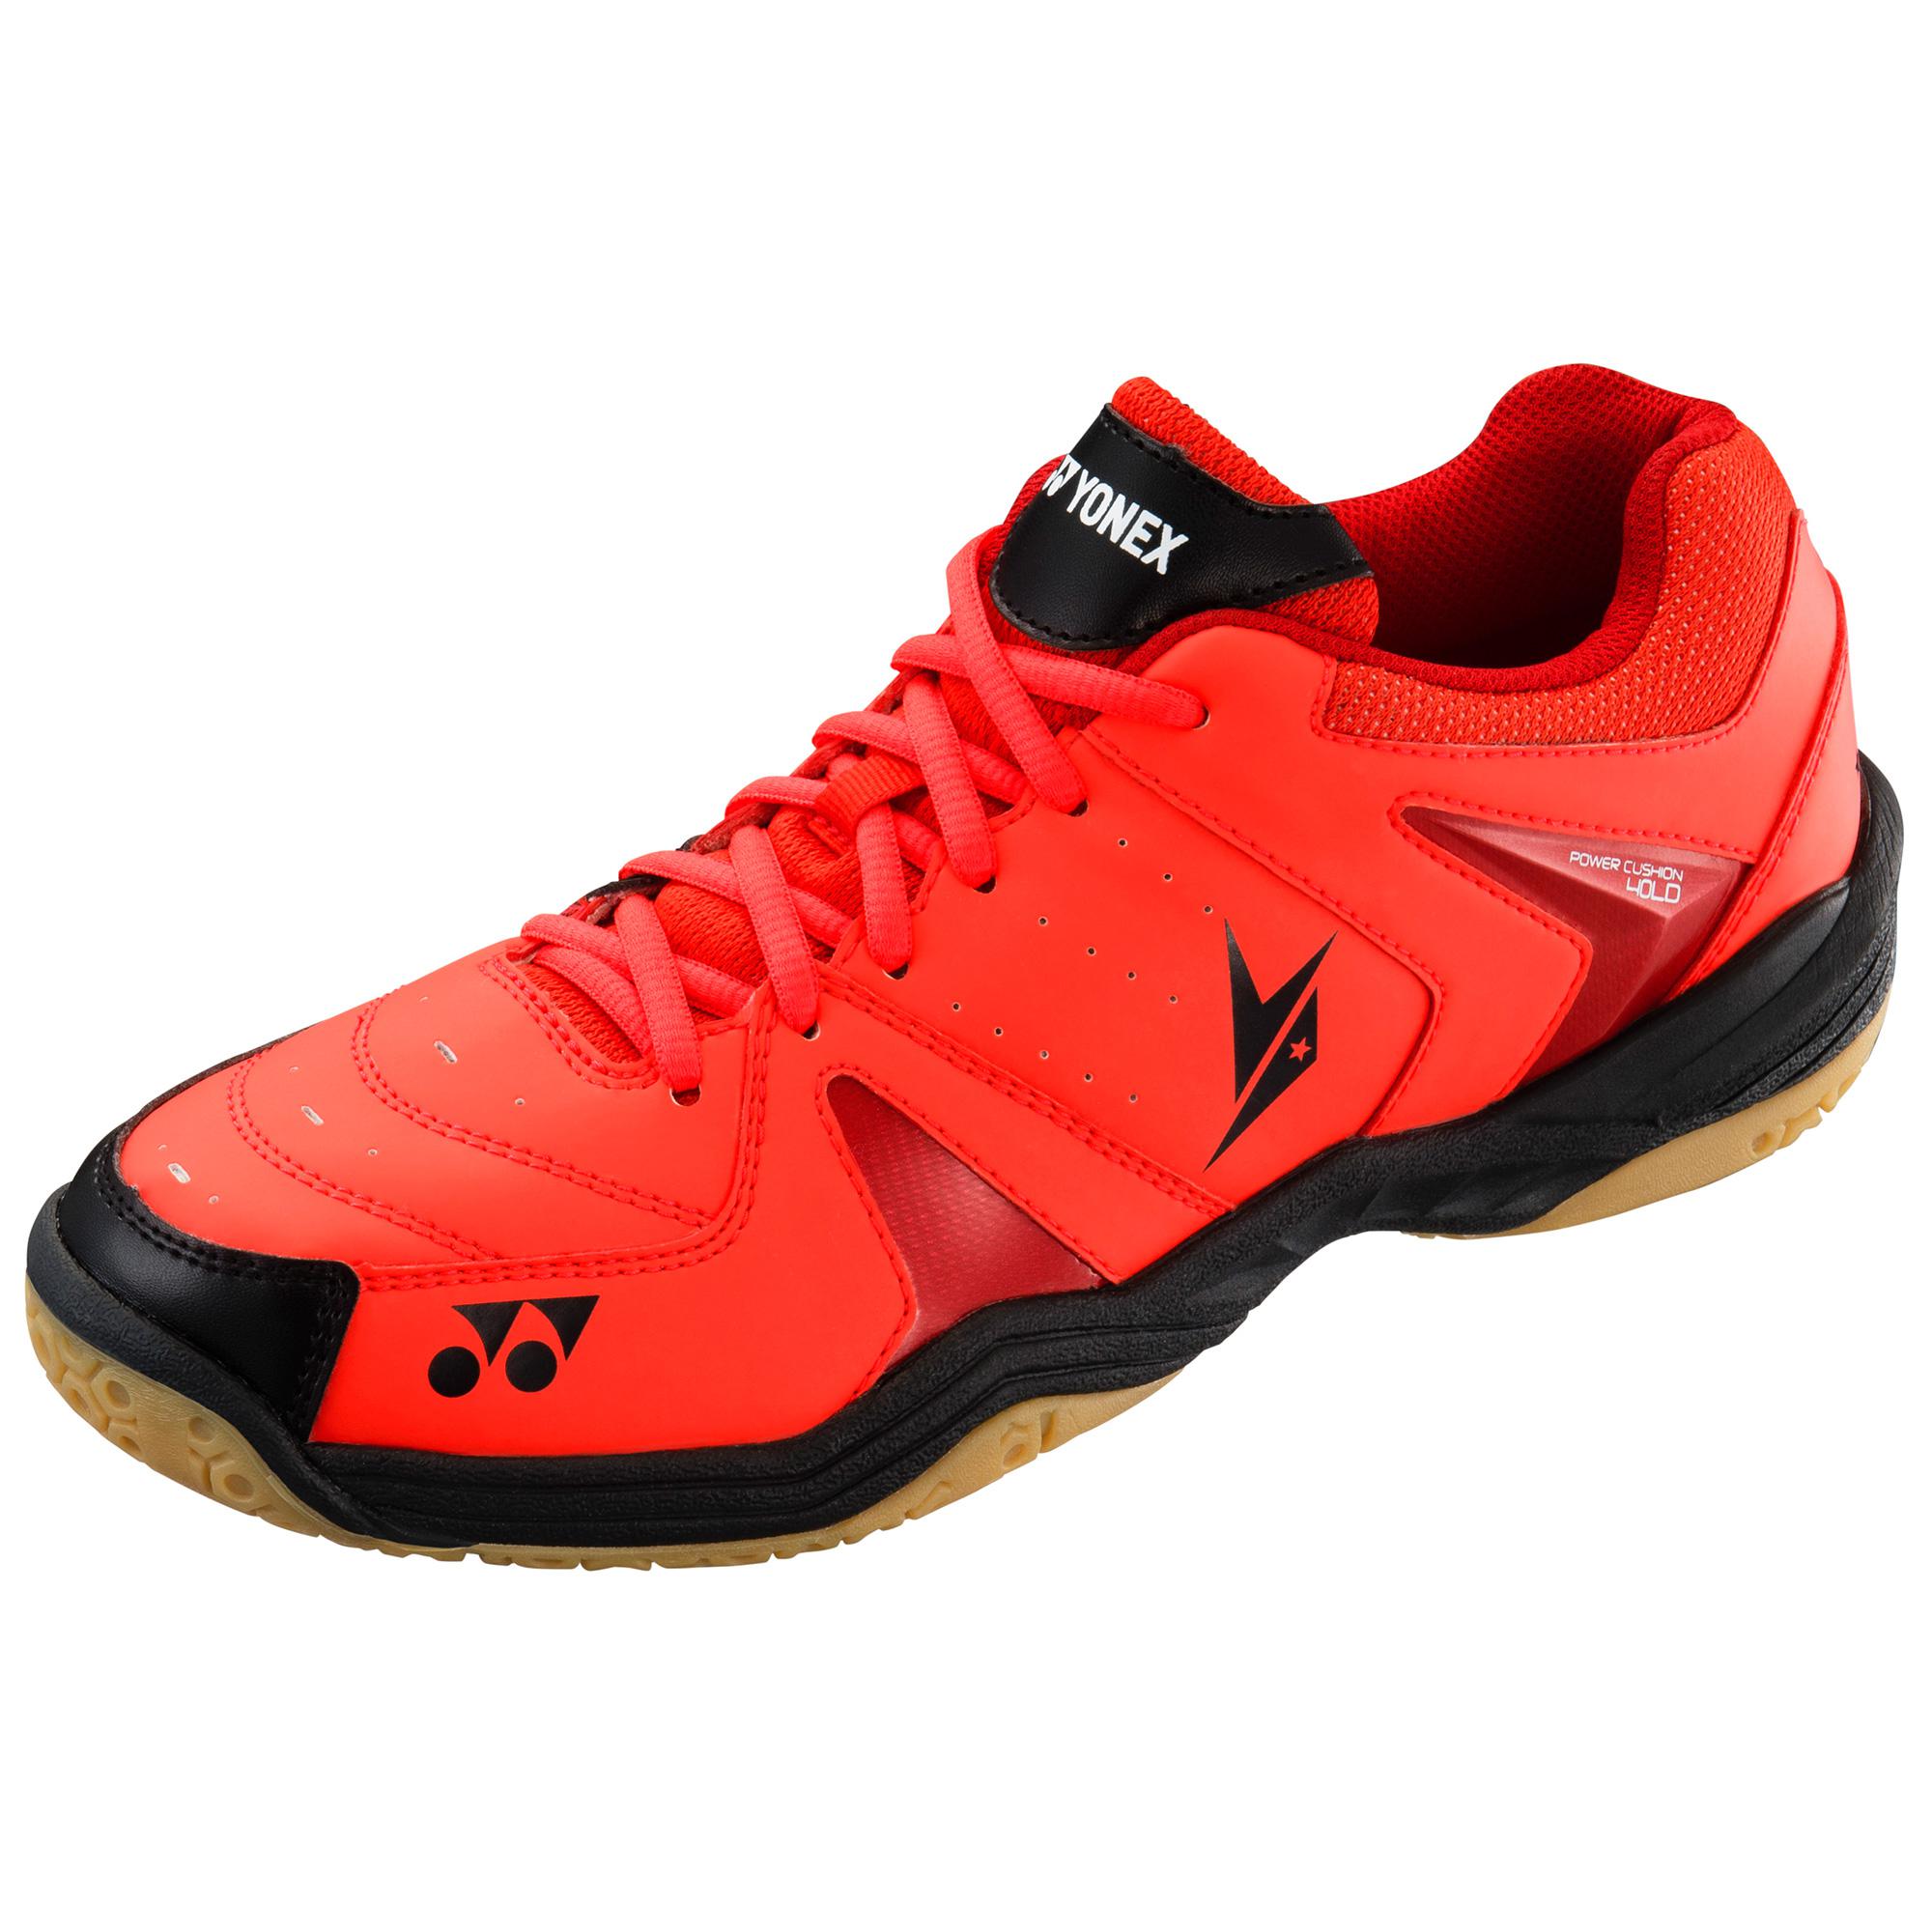 Yonex SHB 40 Mens Lin Dan Badminton Shoes - Red - Tennisnuts.com